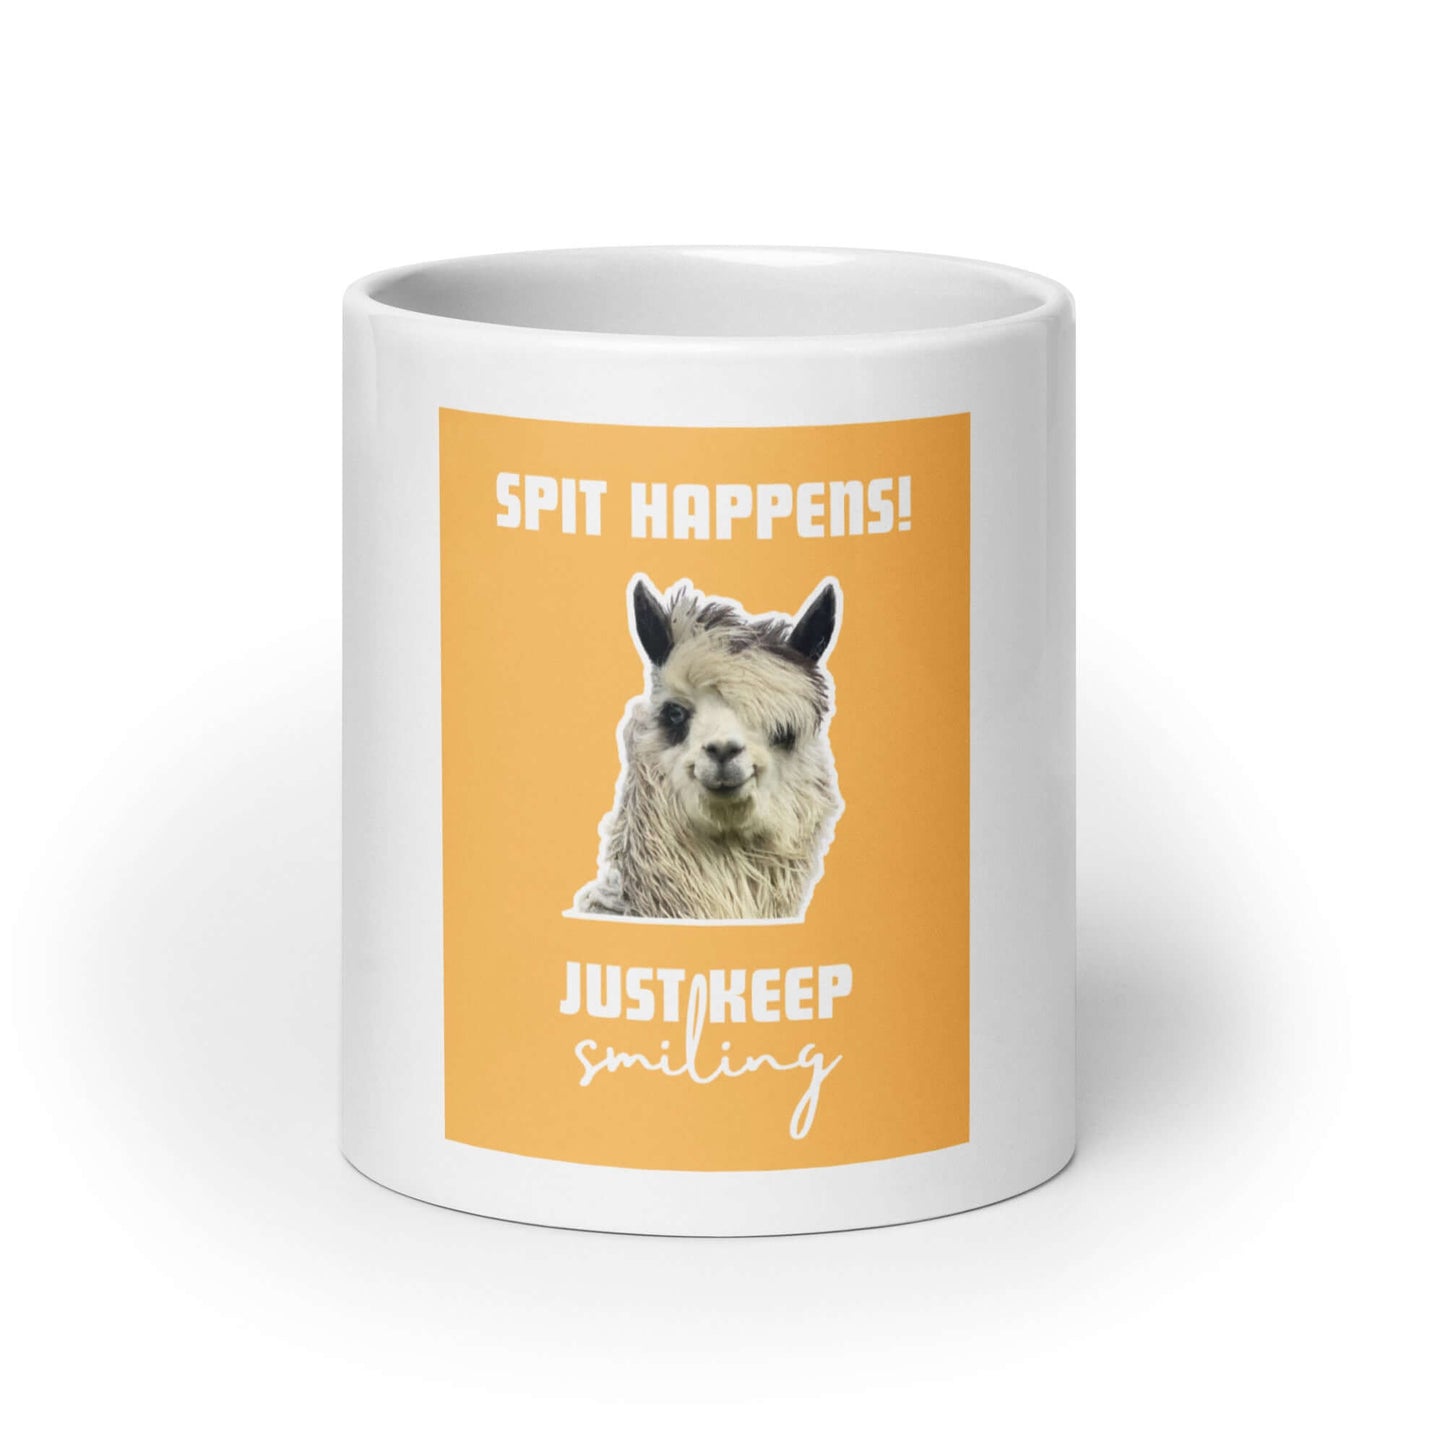 Alpaka-Design Tasse 'Spit happens! Just keep smiling' - Alpaka Produkte online kaufen und dabei Gutes tun!